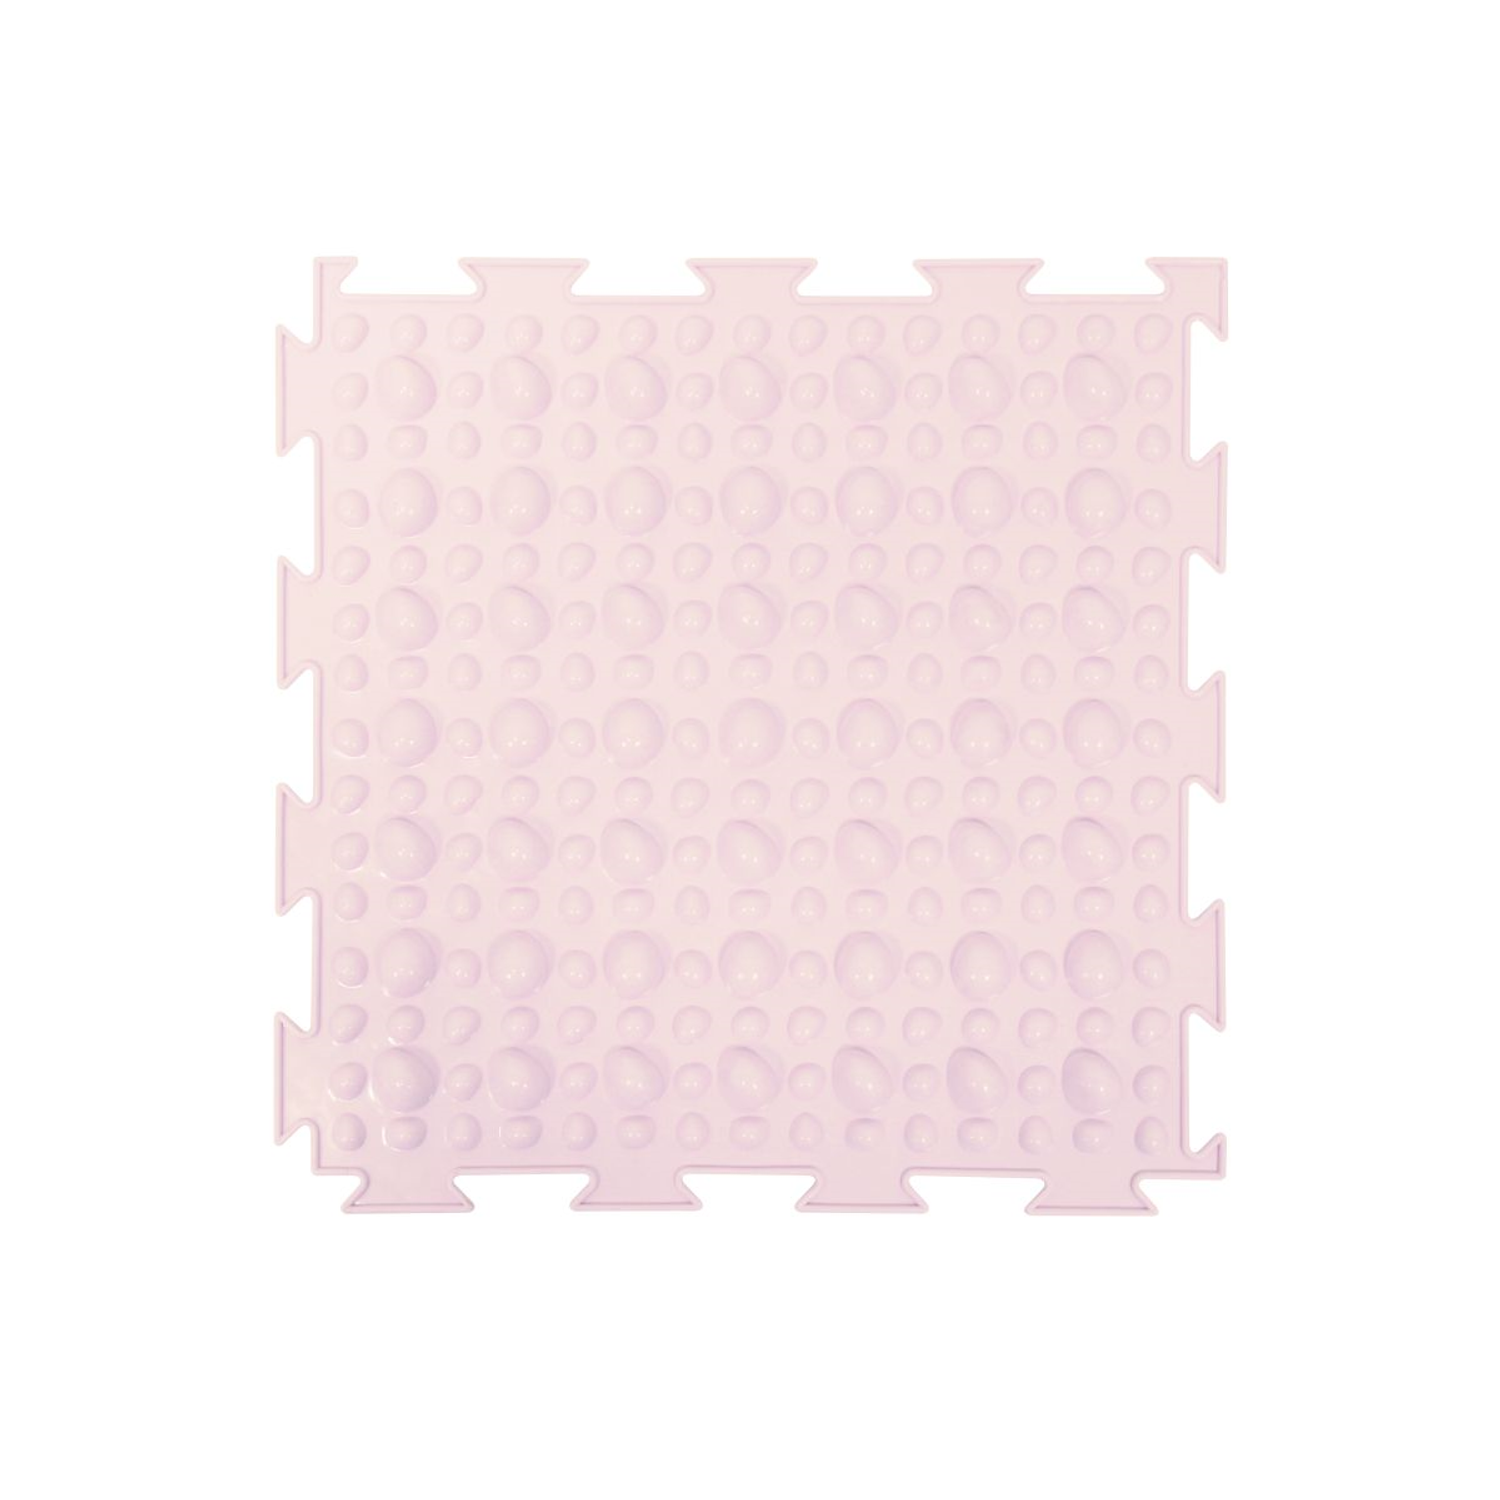 Массажный детский коврик пазл Ортодон развивающий игровой Камешки мягкий розовый 1 пазл - фото 2